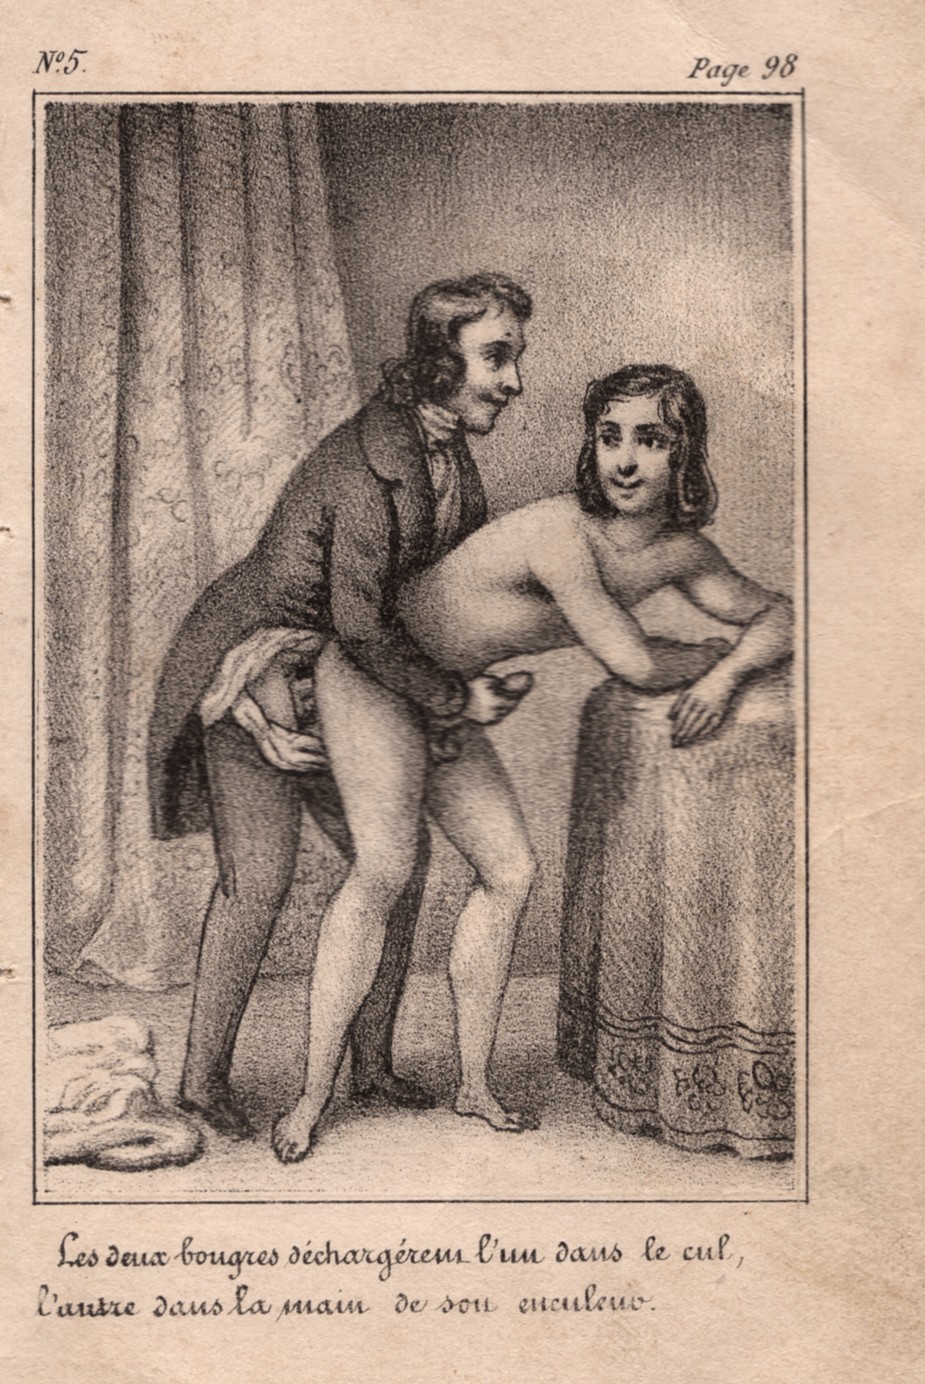 19th century gay porn